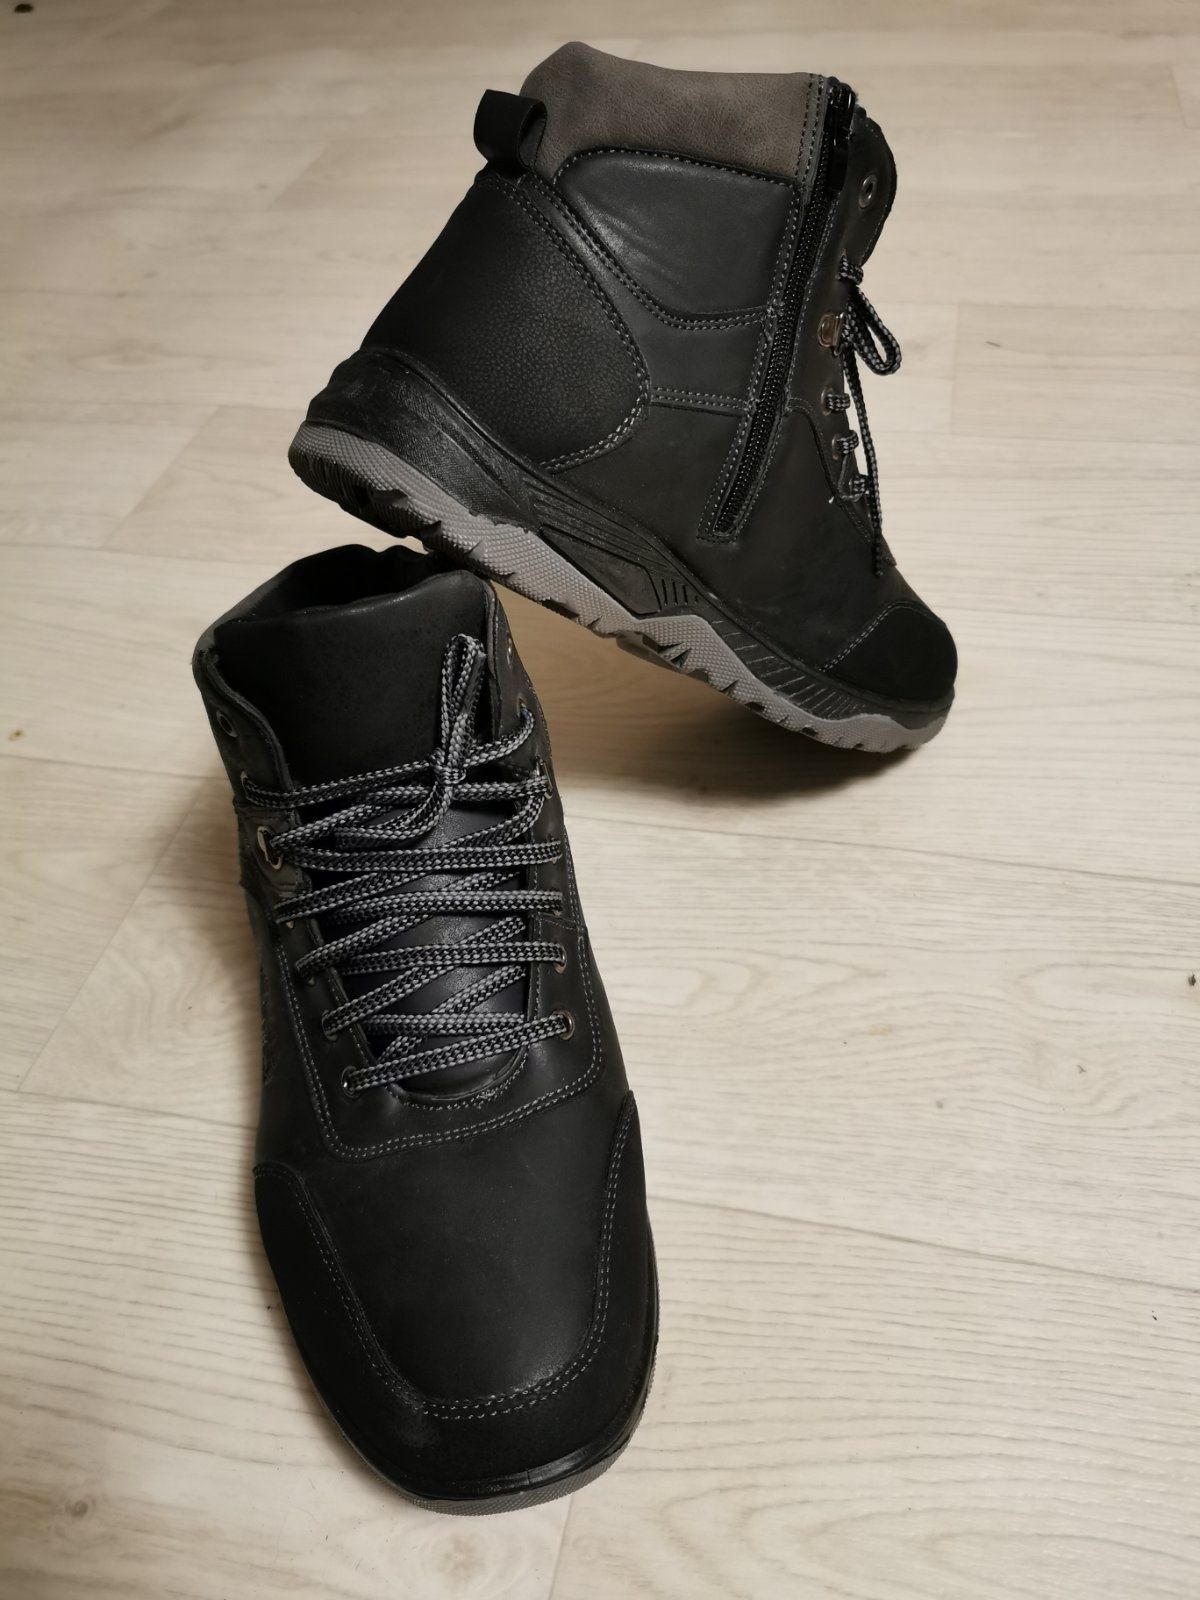 46 размер Новые зимние мужские ботинки стелька 29.5 см. 45 - 46 размер